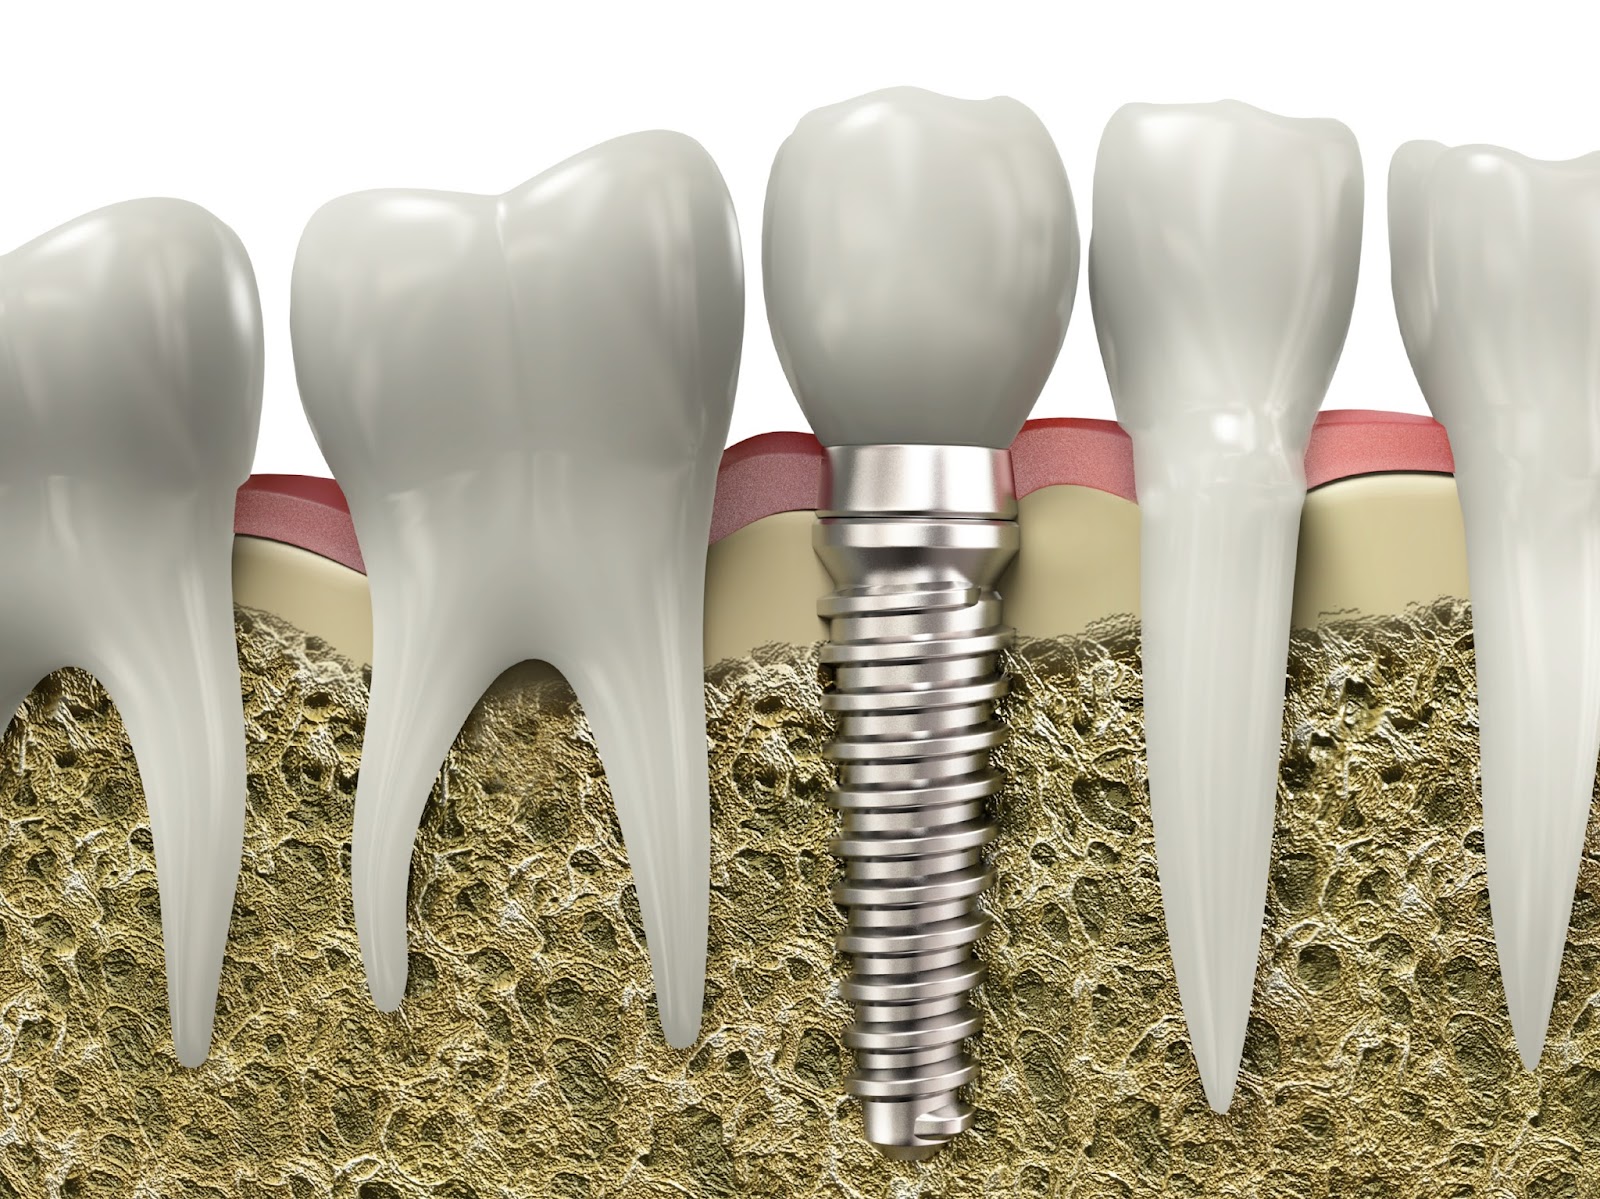 giá răng implant;bảng giá cấy ghép implant;làm răng implant;cấy ghép implant răng;giá tiền trồng răng implant;bảng giá làm răng implant;trồng implant